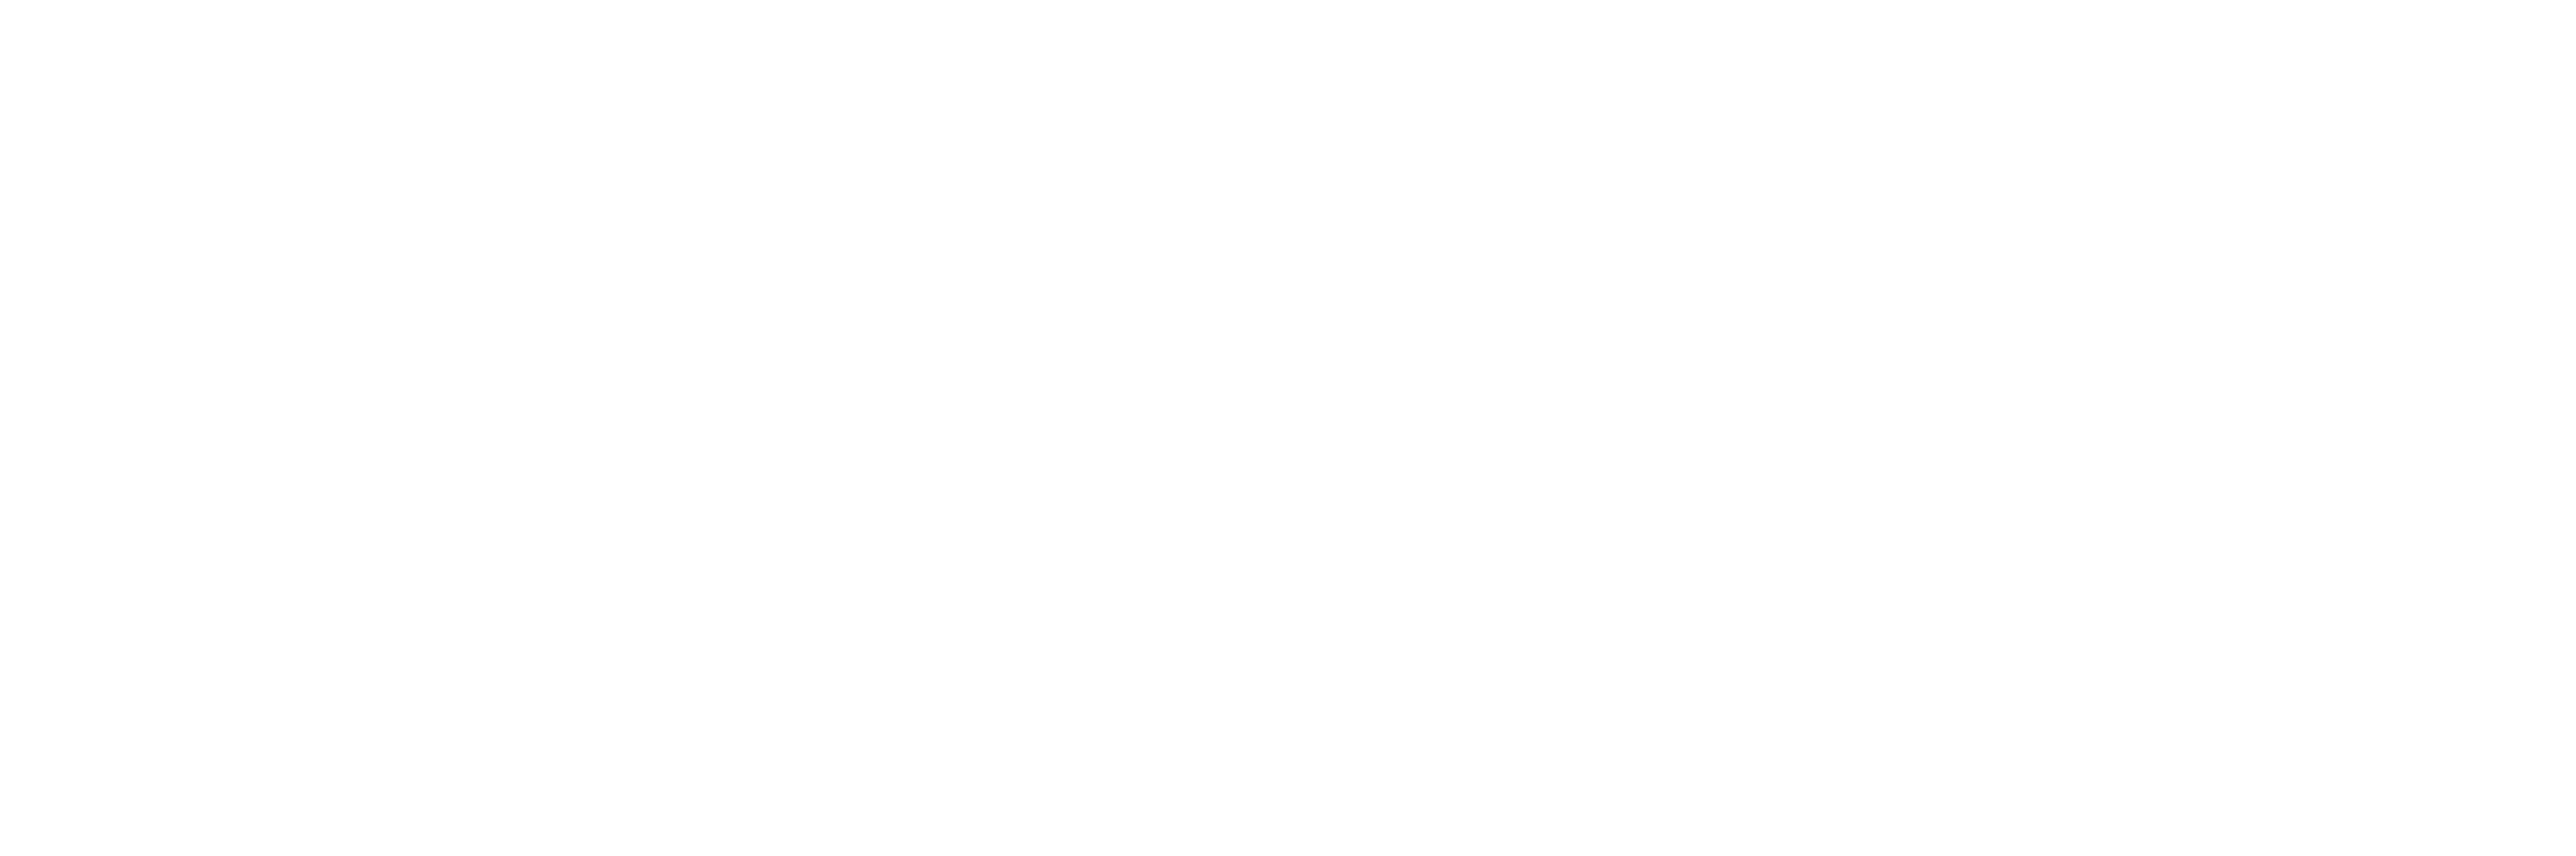 The Hague Centre